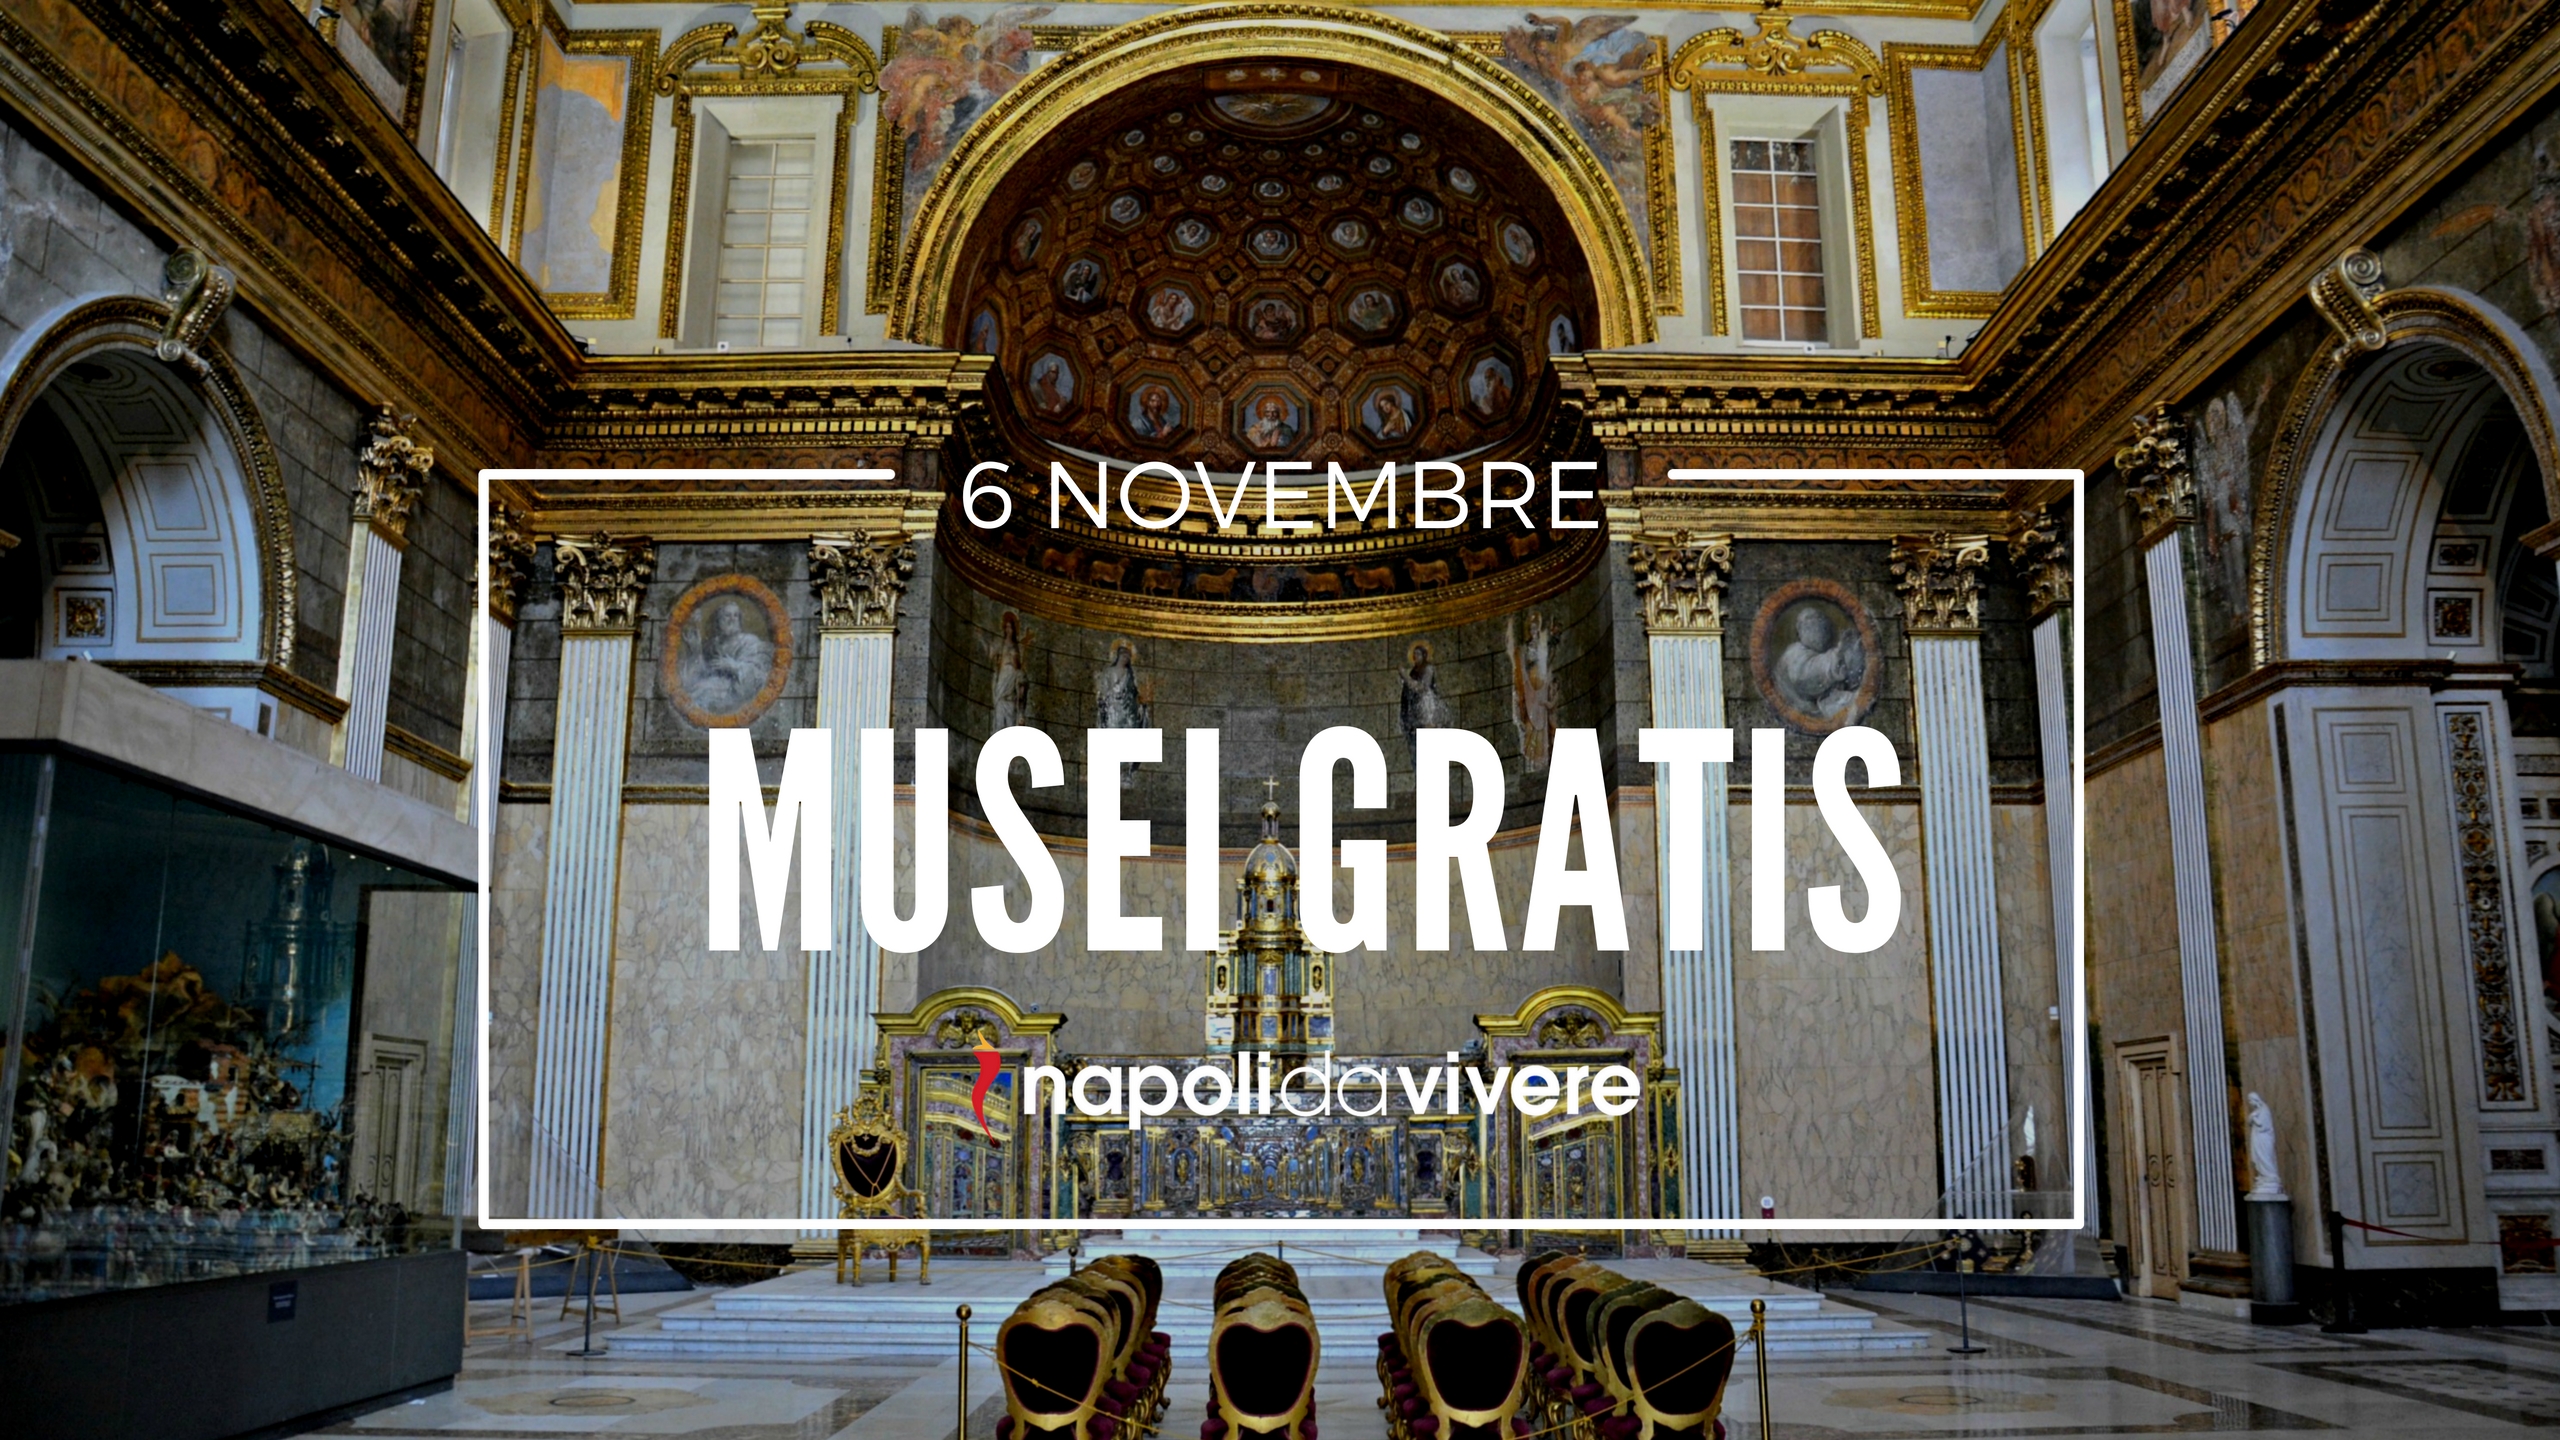 musei-gratis-a-napoli-e-in-campania-domenica-6-novembre-2016